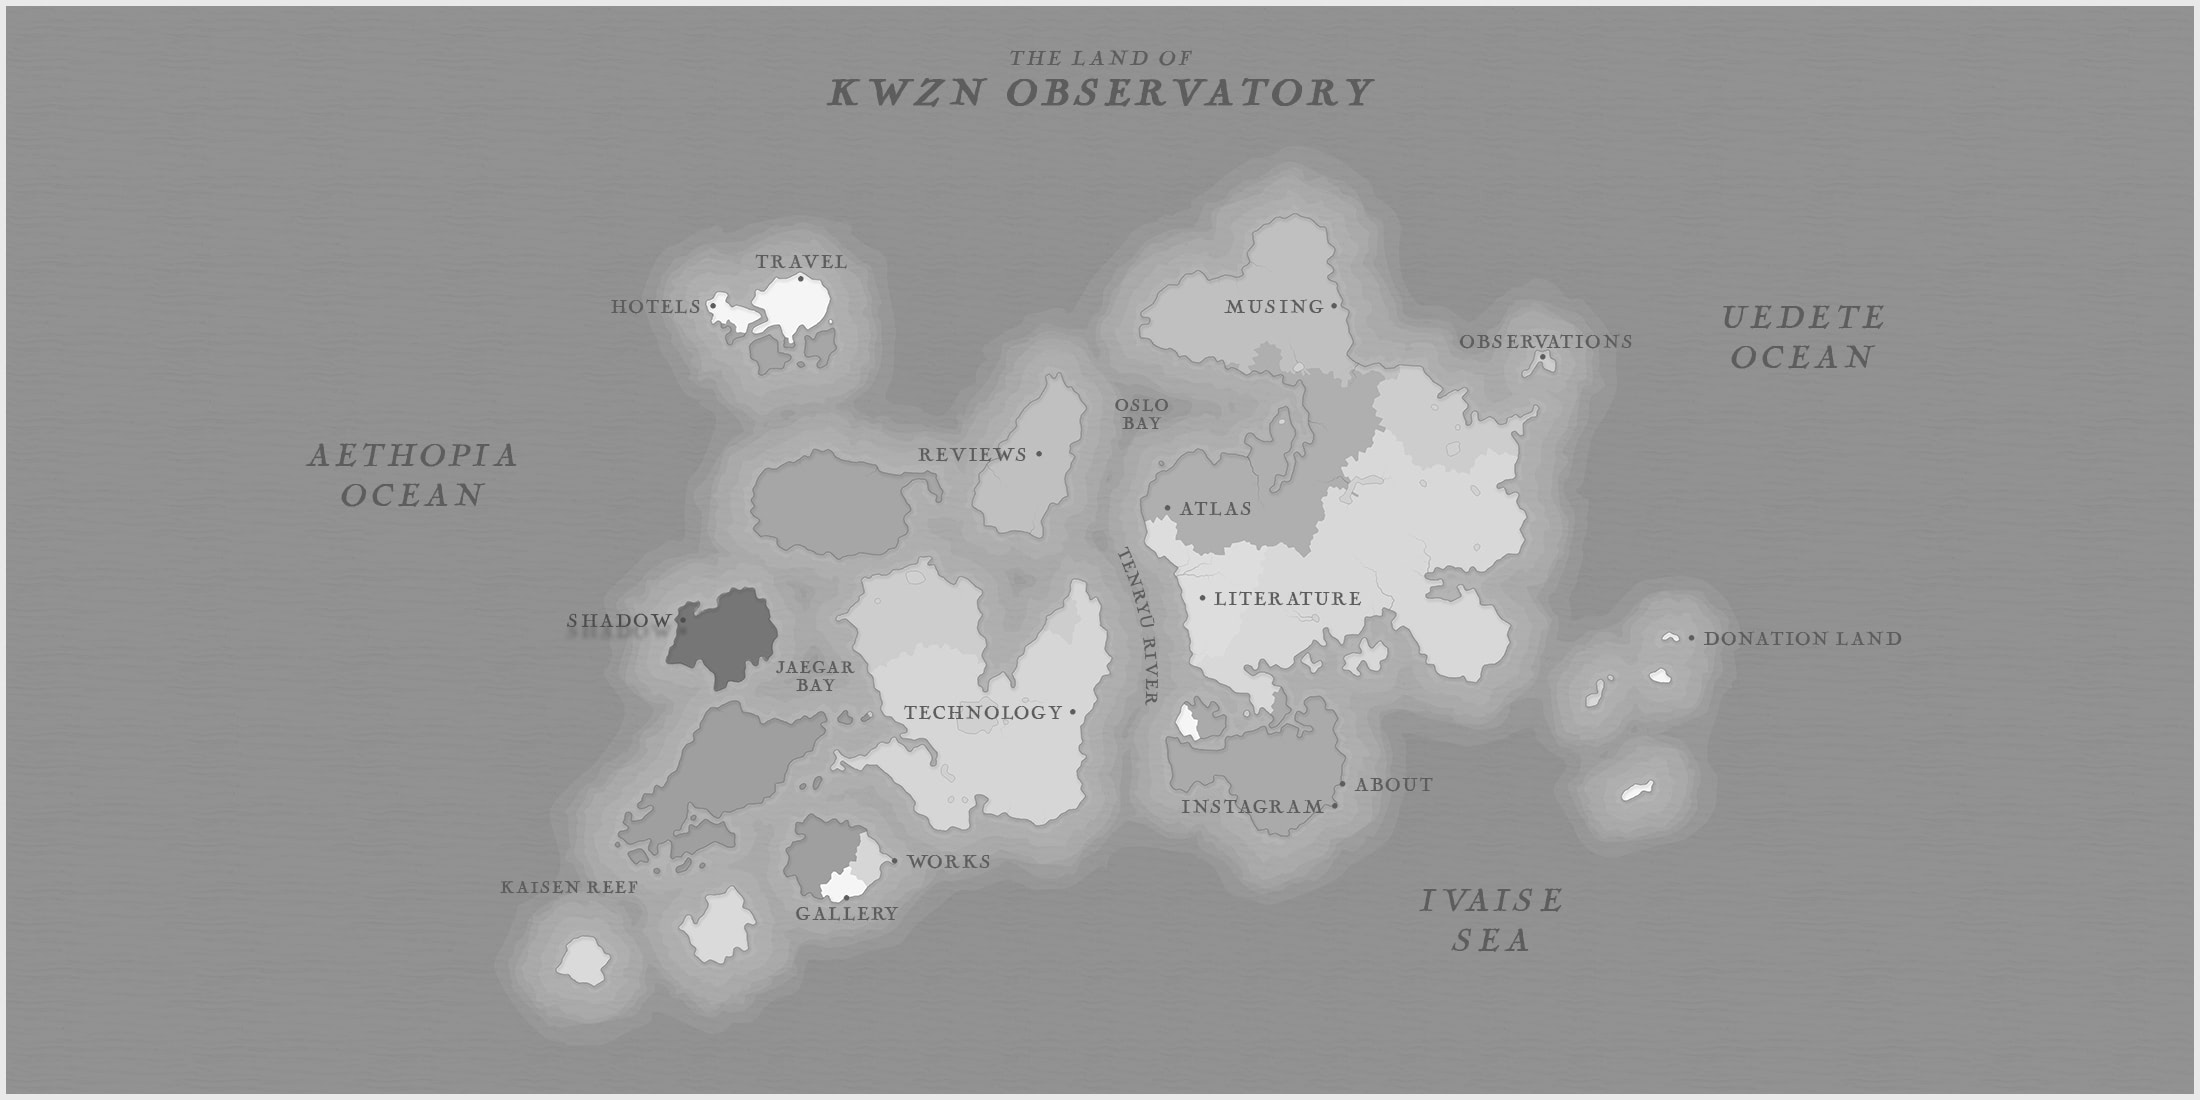 KWZ NOBSV - KWZN Observatory Map